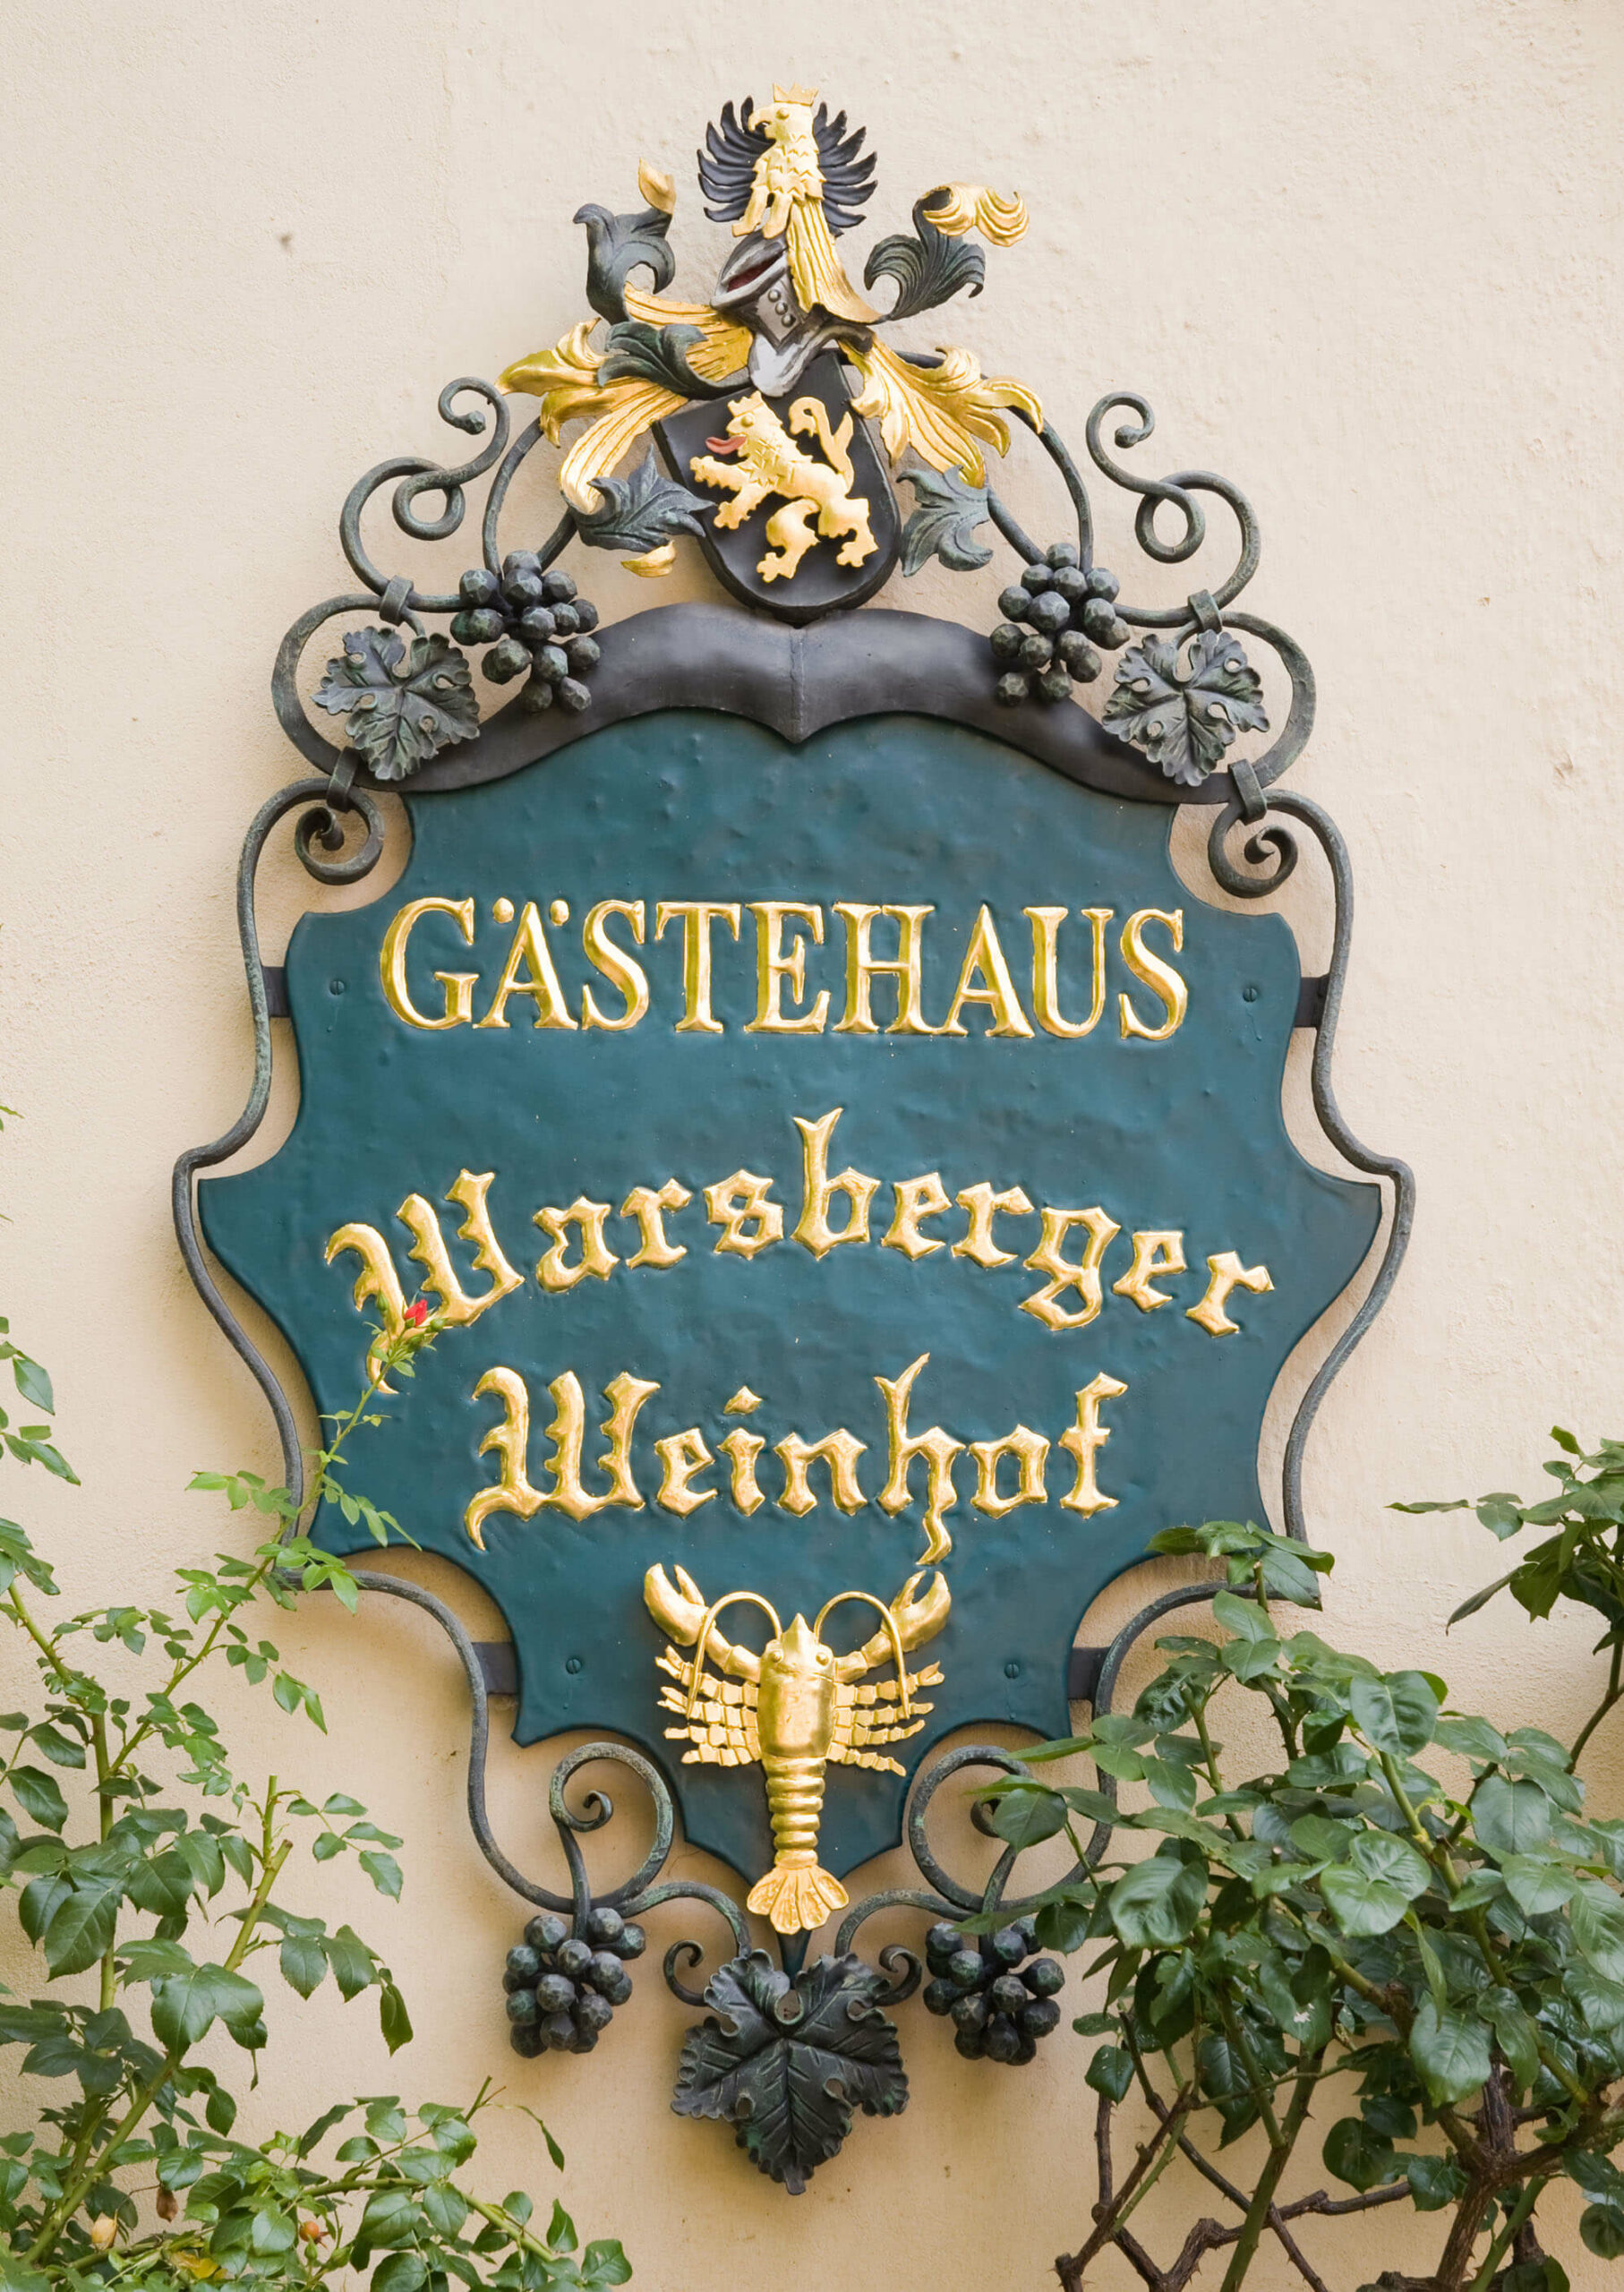 Schild Gästehaus Warsberger Weinhof